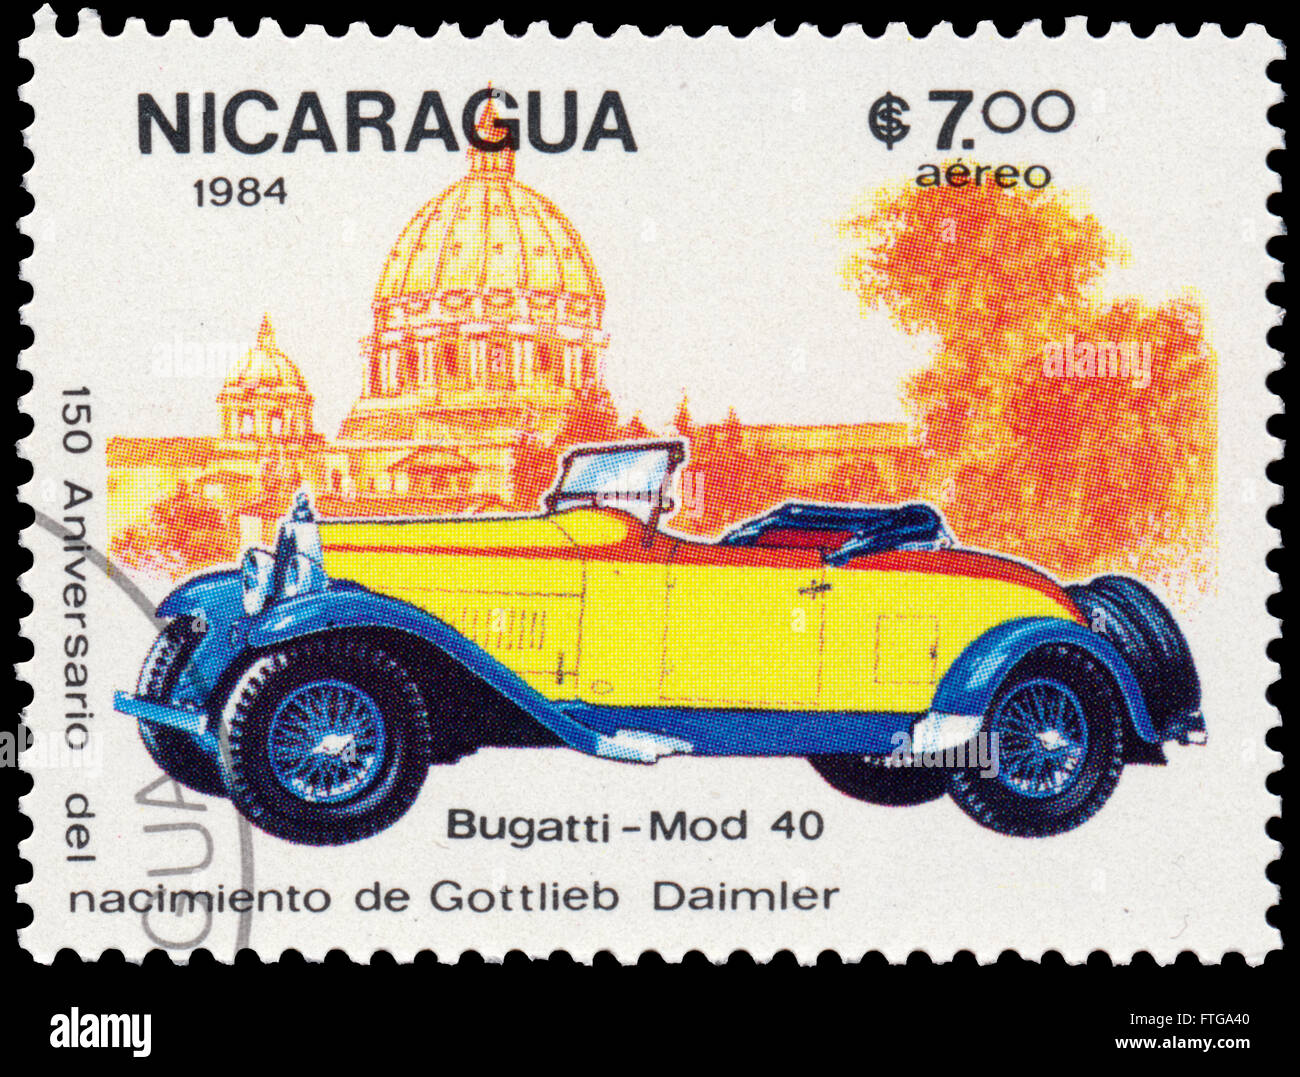 BUDAPEST, Ungarn - 18. März 2016: eine Briefmarke gedruckt in Nicaragua zeigt Bugatti, ca. 1984 Stockfoto